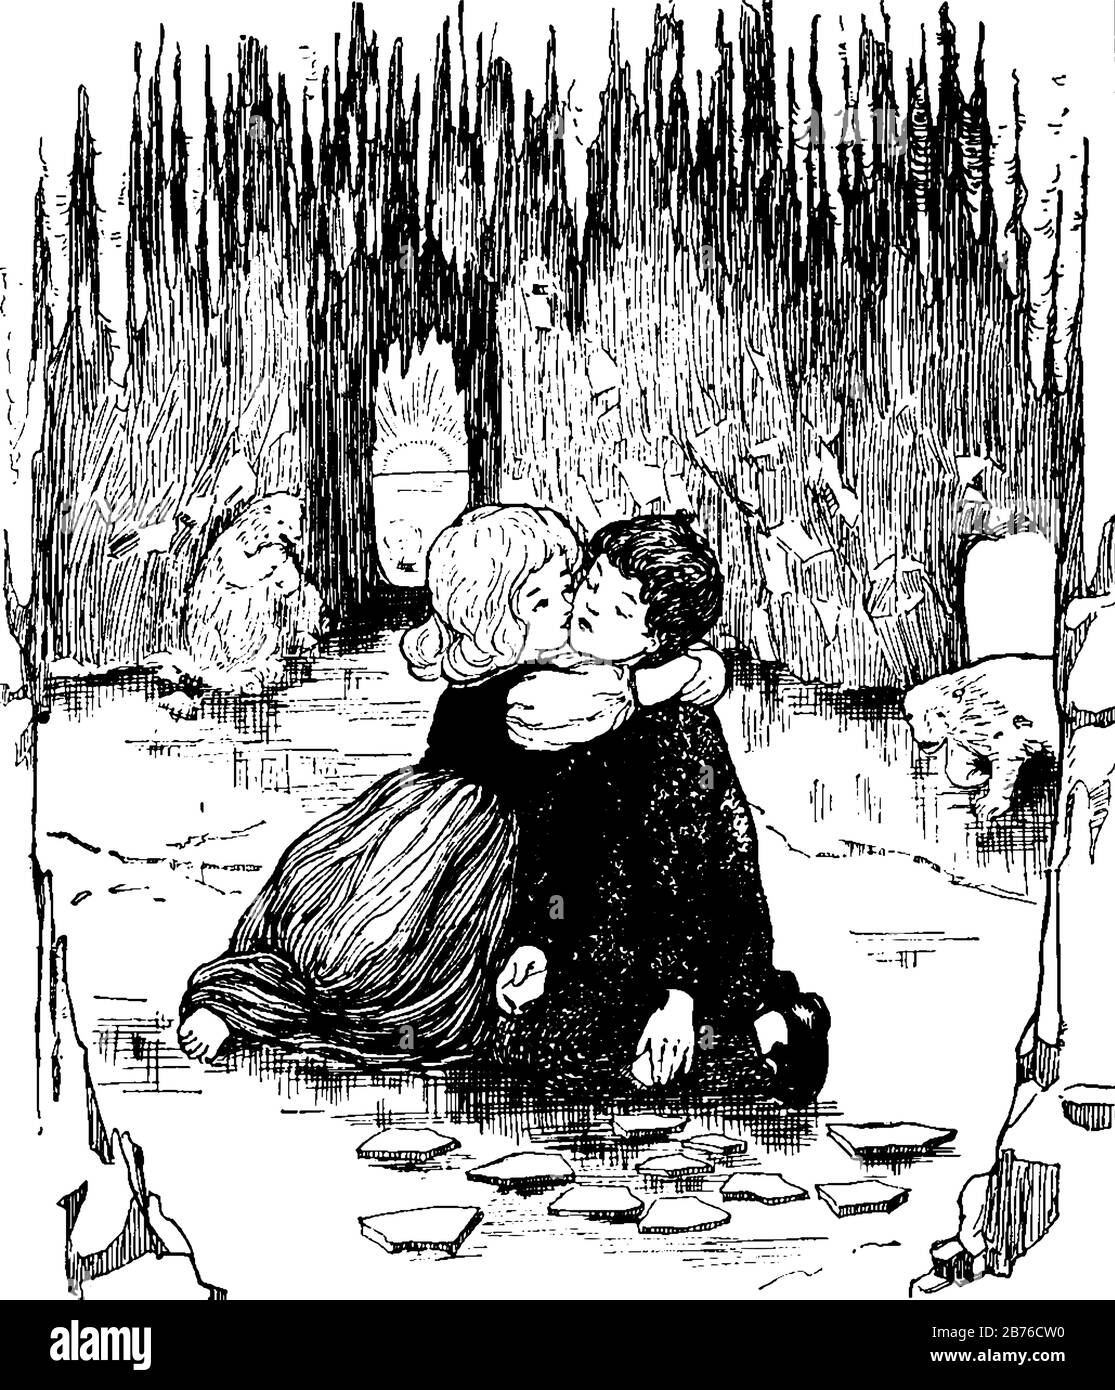 Una bambina che bacia il ragazzino su pulcini, orsi sullo sfondo, disegno di linea vintage o illustrazione dell'incisione Illustrazione Vettoriale